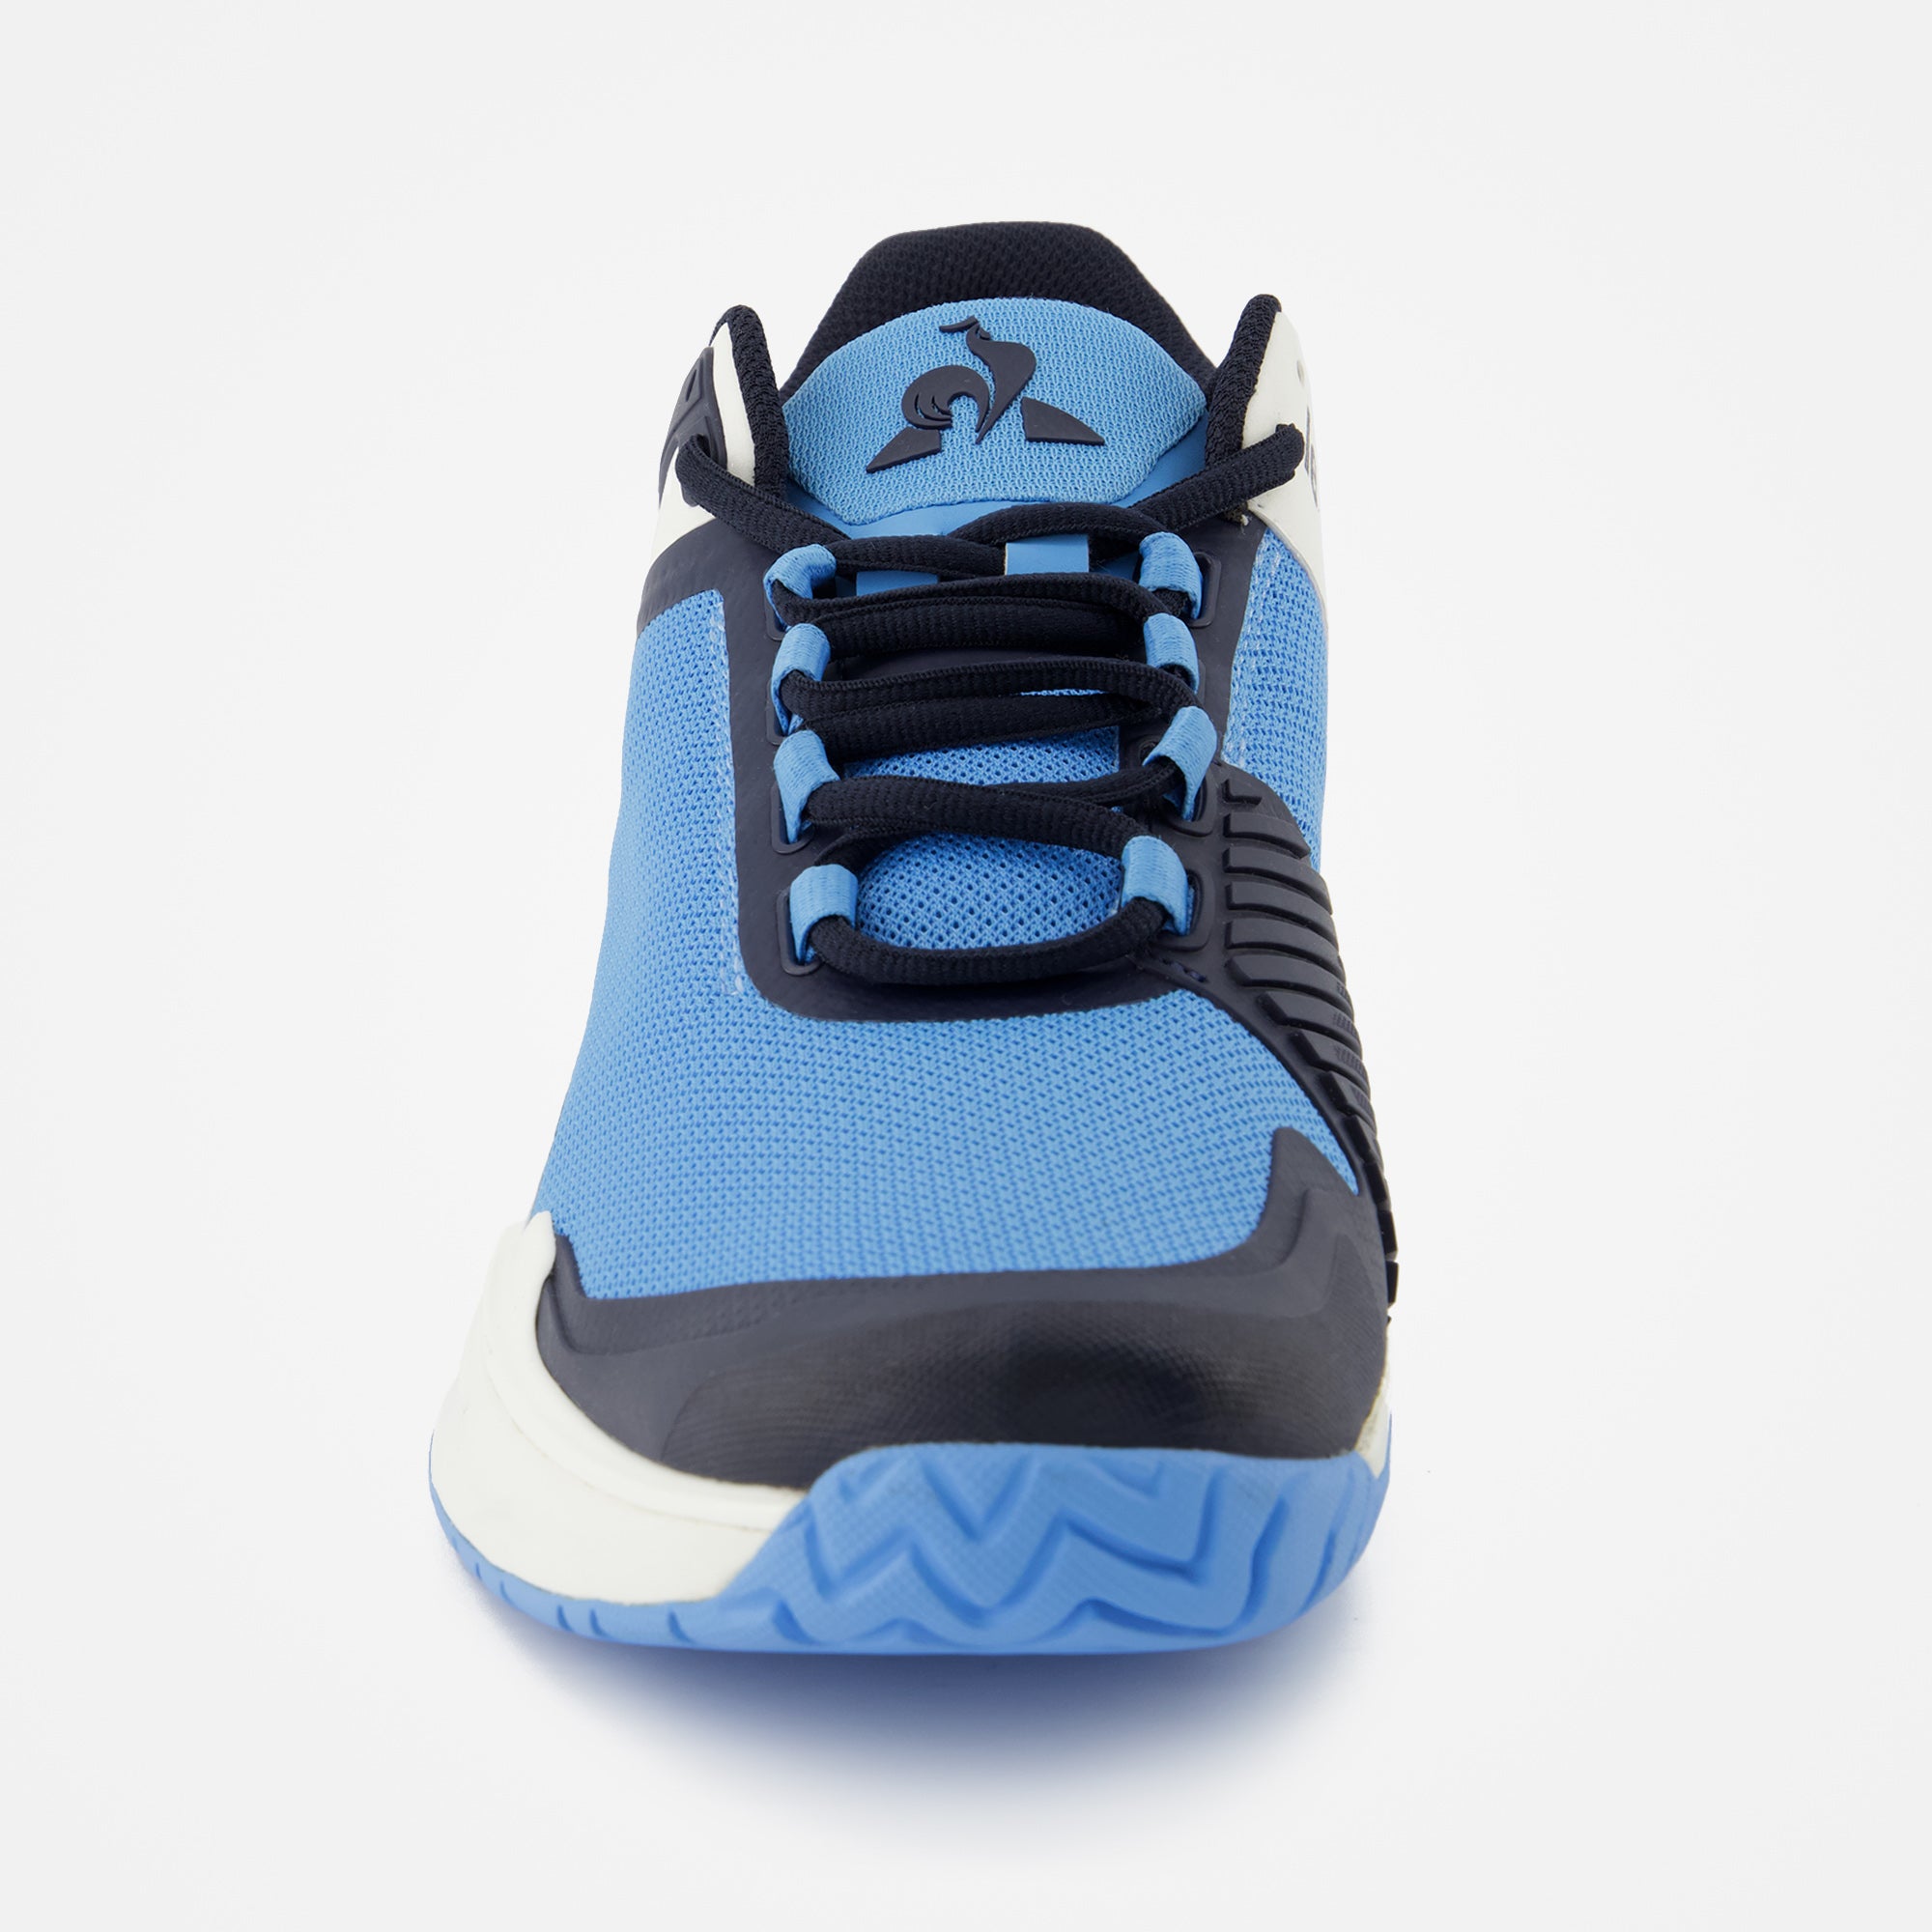 2320117-FUTUR LCS T01 ALL COURT bonnie blue  | Shoes de tennis FUTUR LCS T01 ALL COURT Unisex